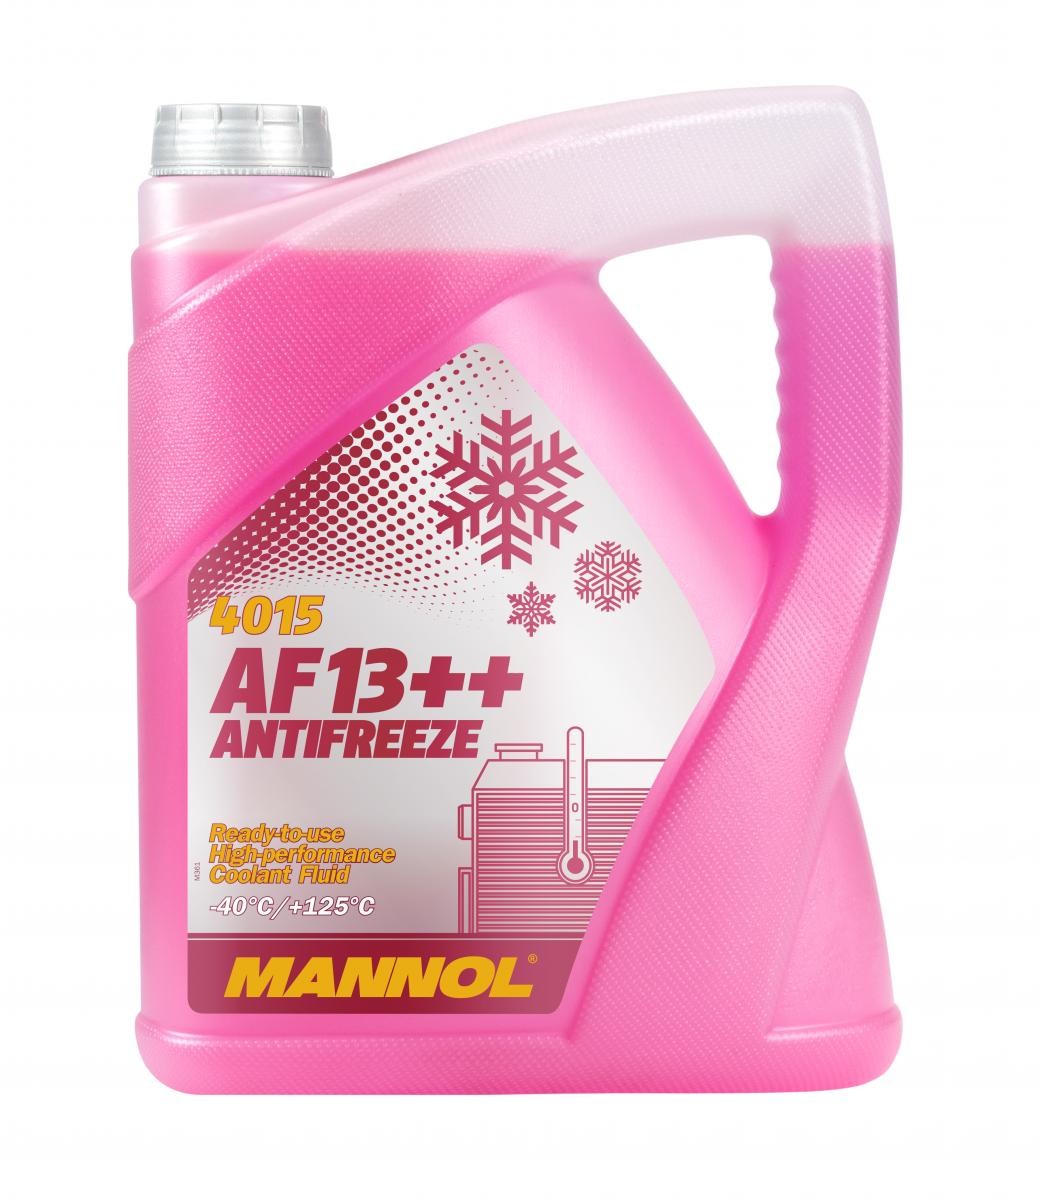 Compre MANNOL Anticongelante MN4015-5 para MERCEDES-BENZ a um preço moderado